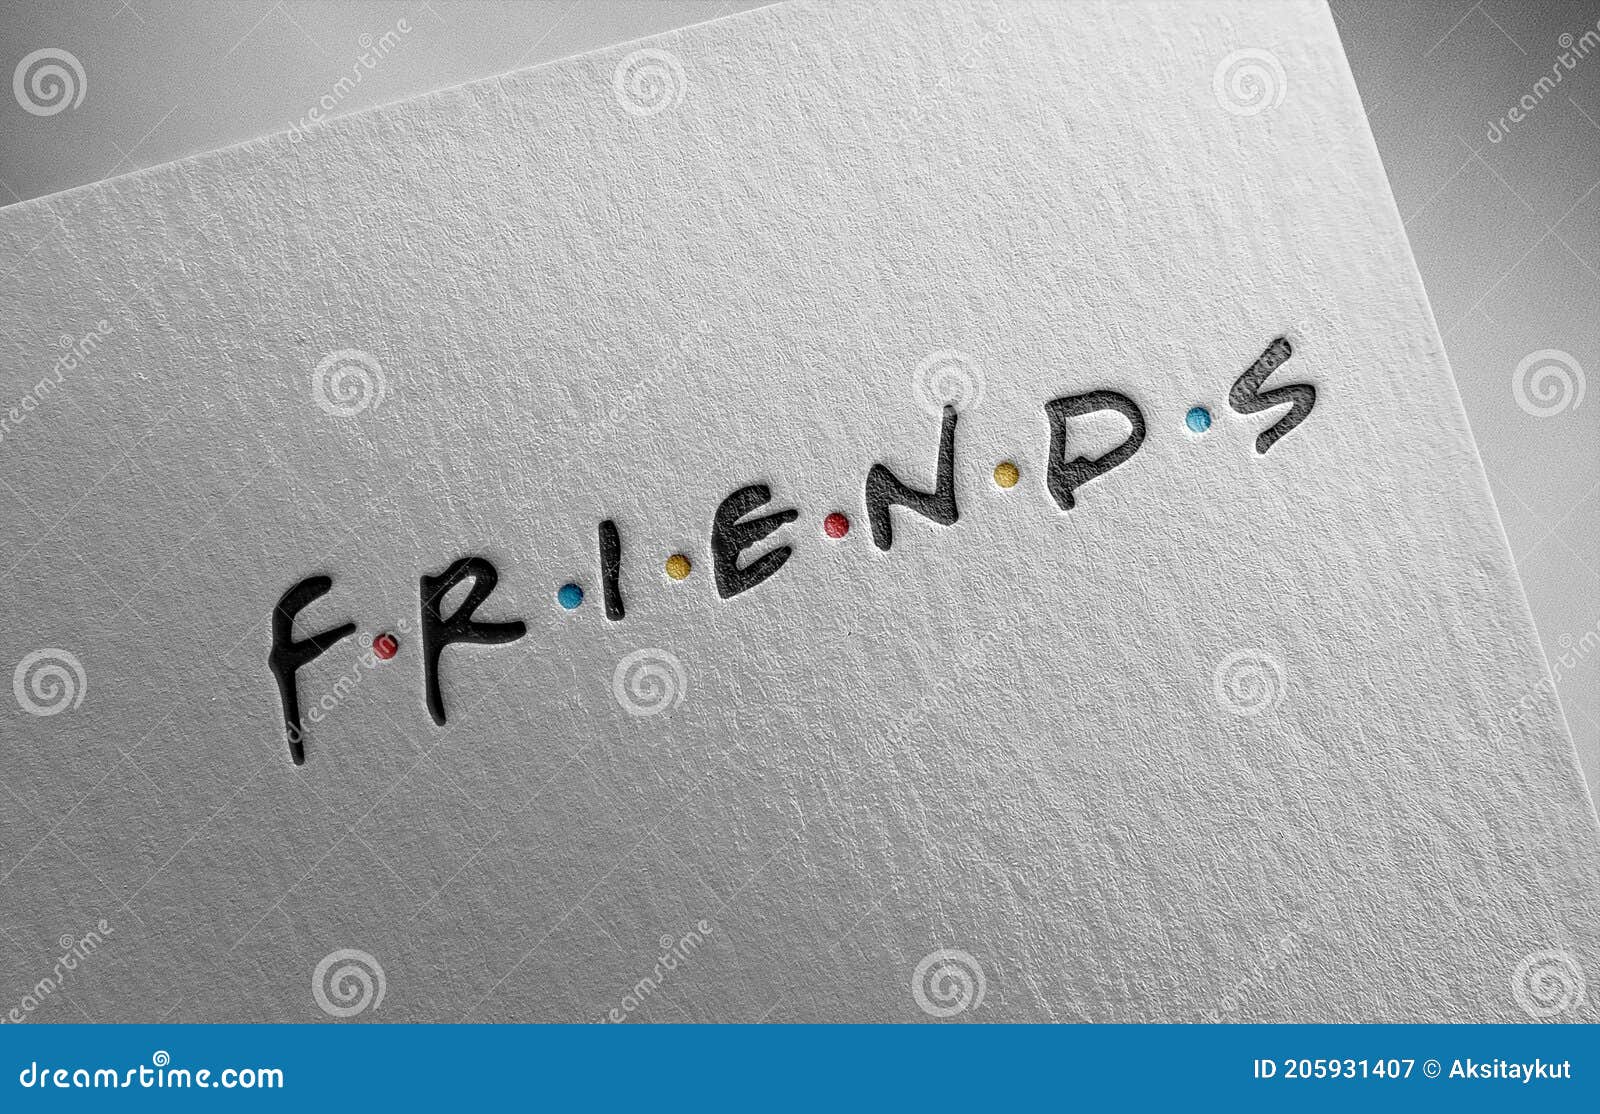 Papierbeschaffenheit Friends1 Auf Redaktionelles Stockfotografie - Bild von  kran, verbindung: 205931407